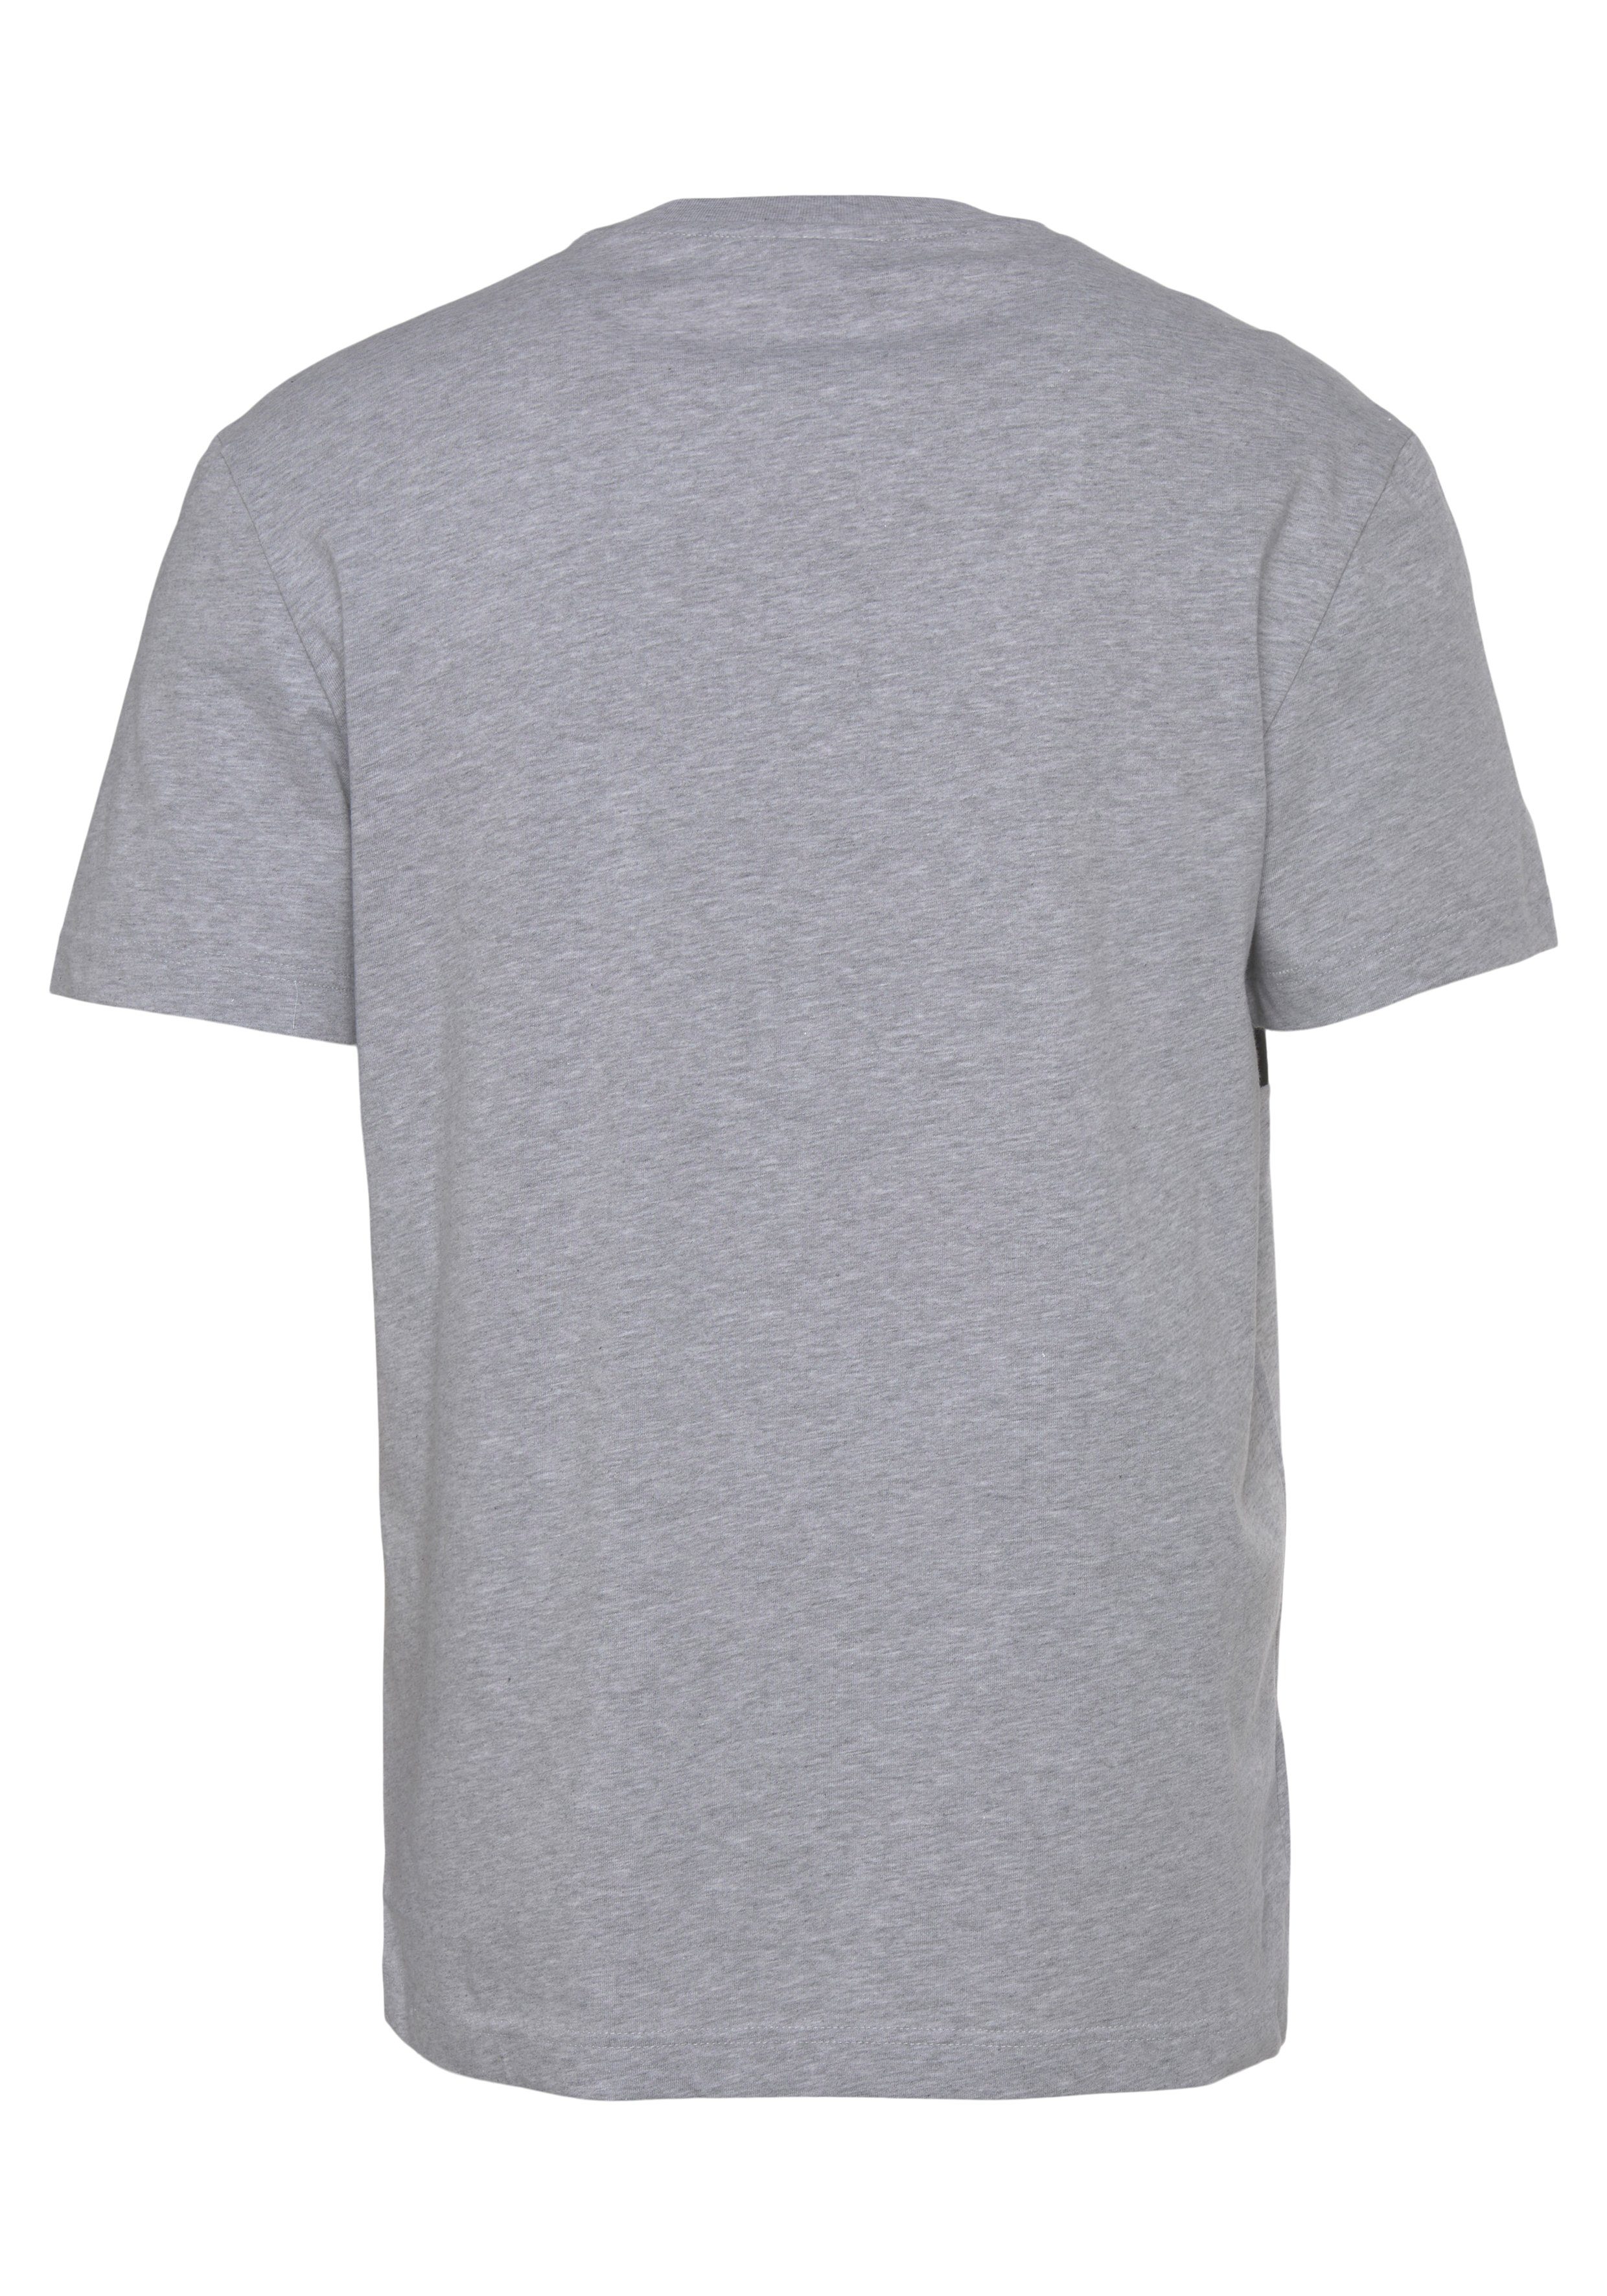 Print der Brust CHINE/BLACK auf mit T-SHIRT großem Lacoste SILVER T-Shirt